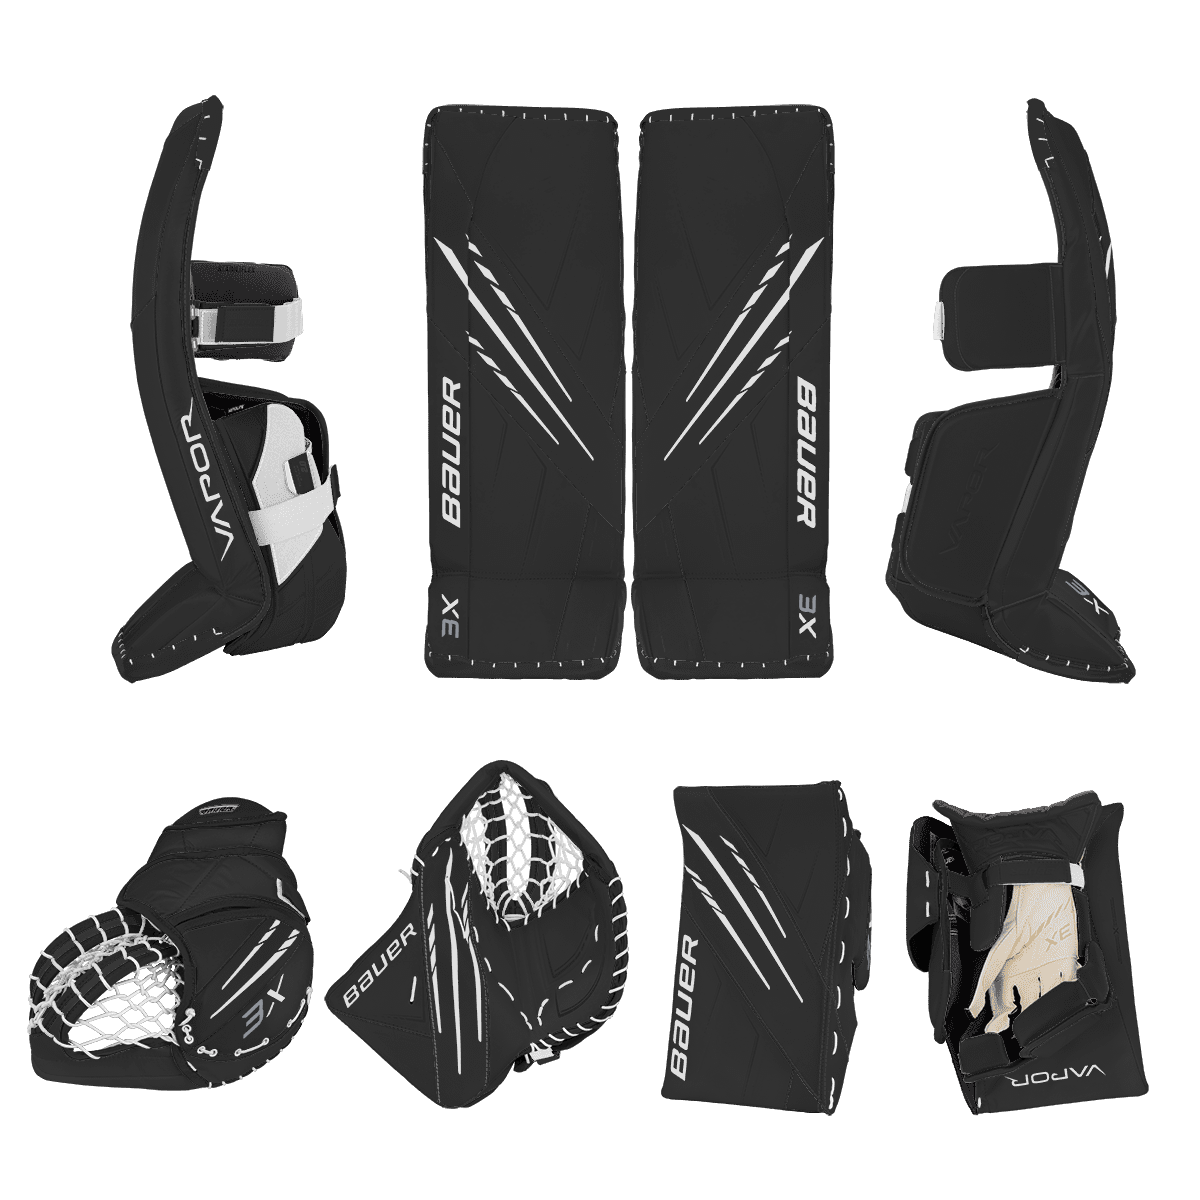 Bauer Vapor 3X Goalie Equipment - Custom Design - Intermediate Black/White Inspiration